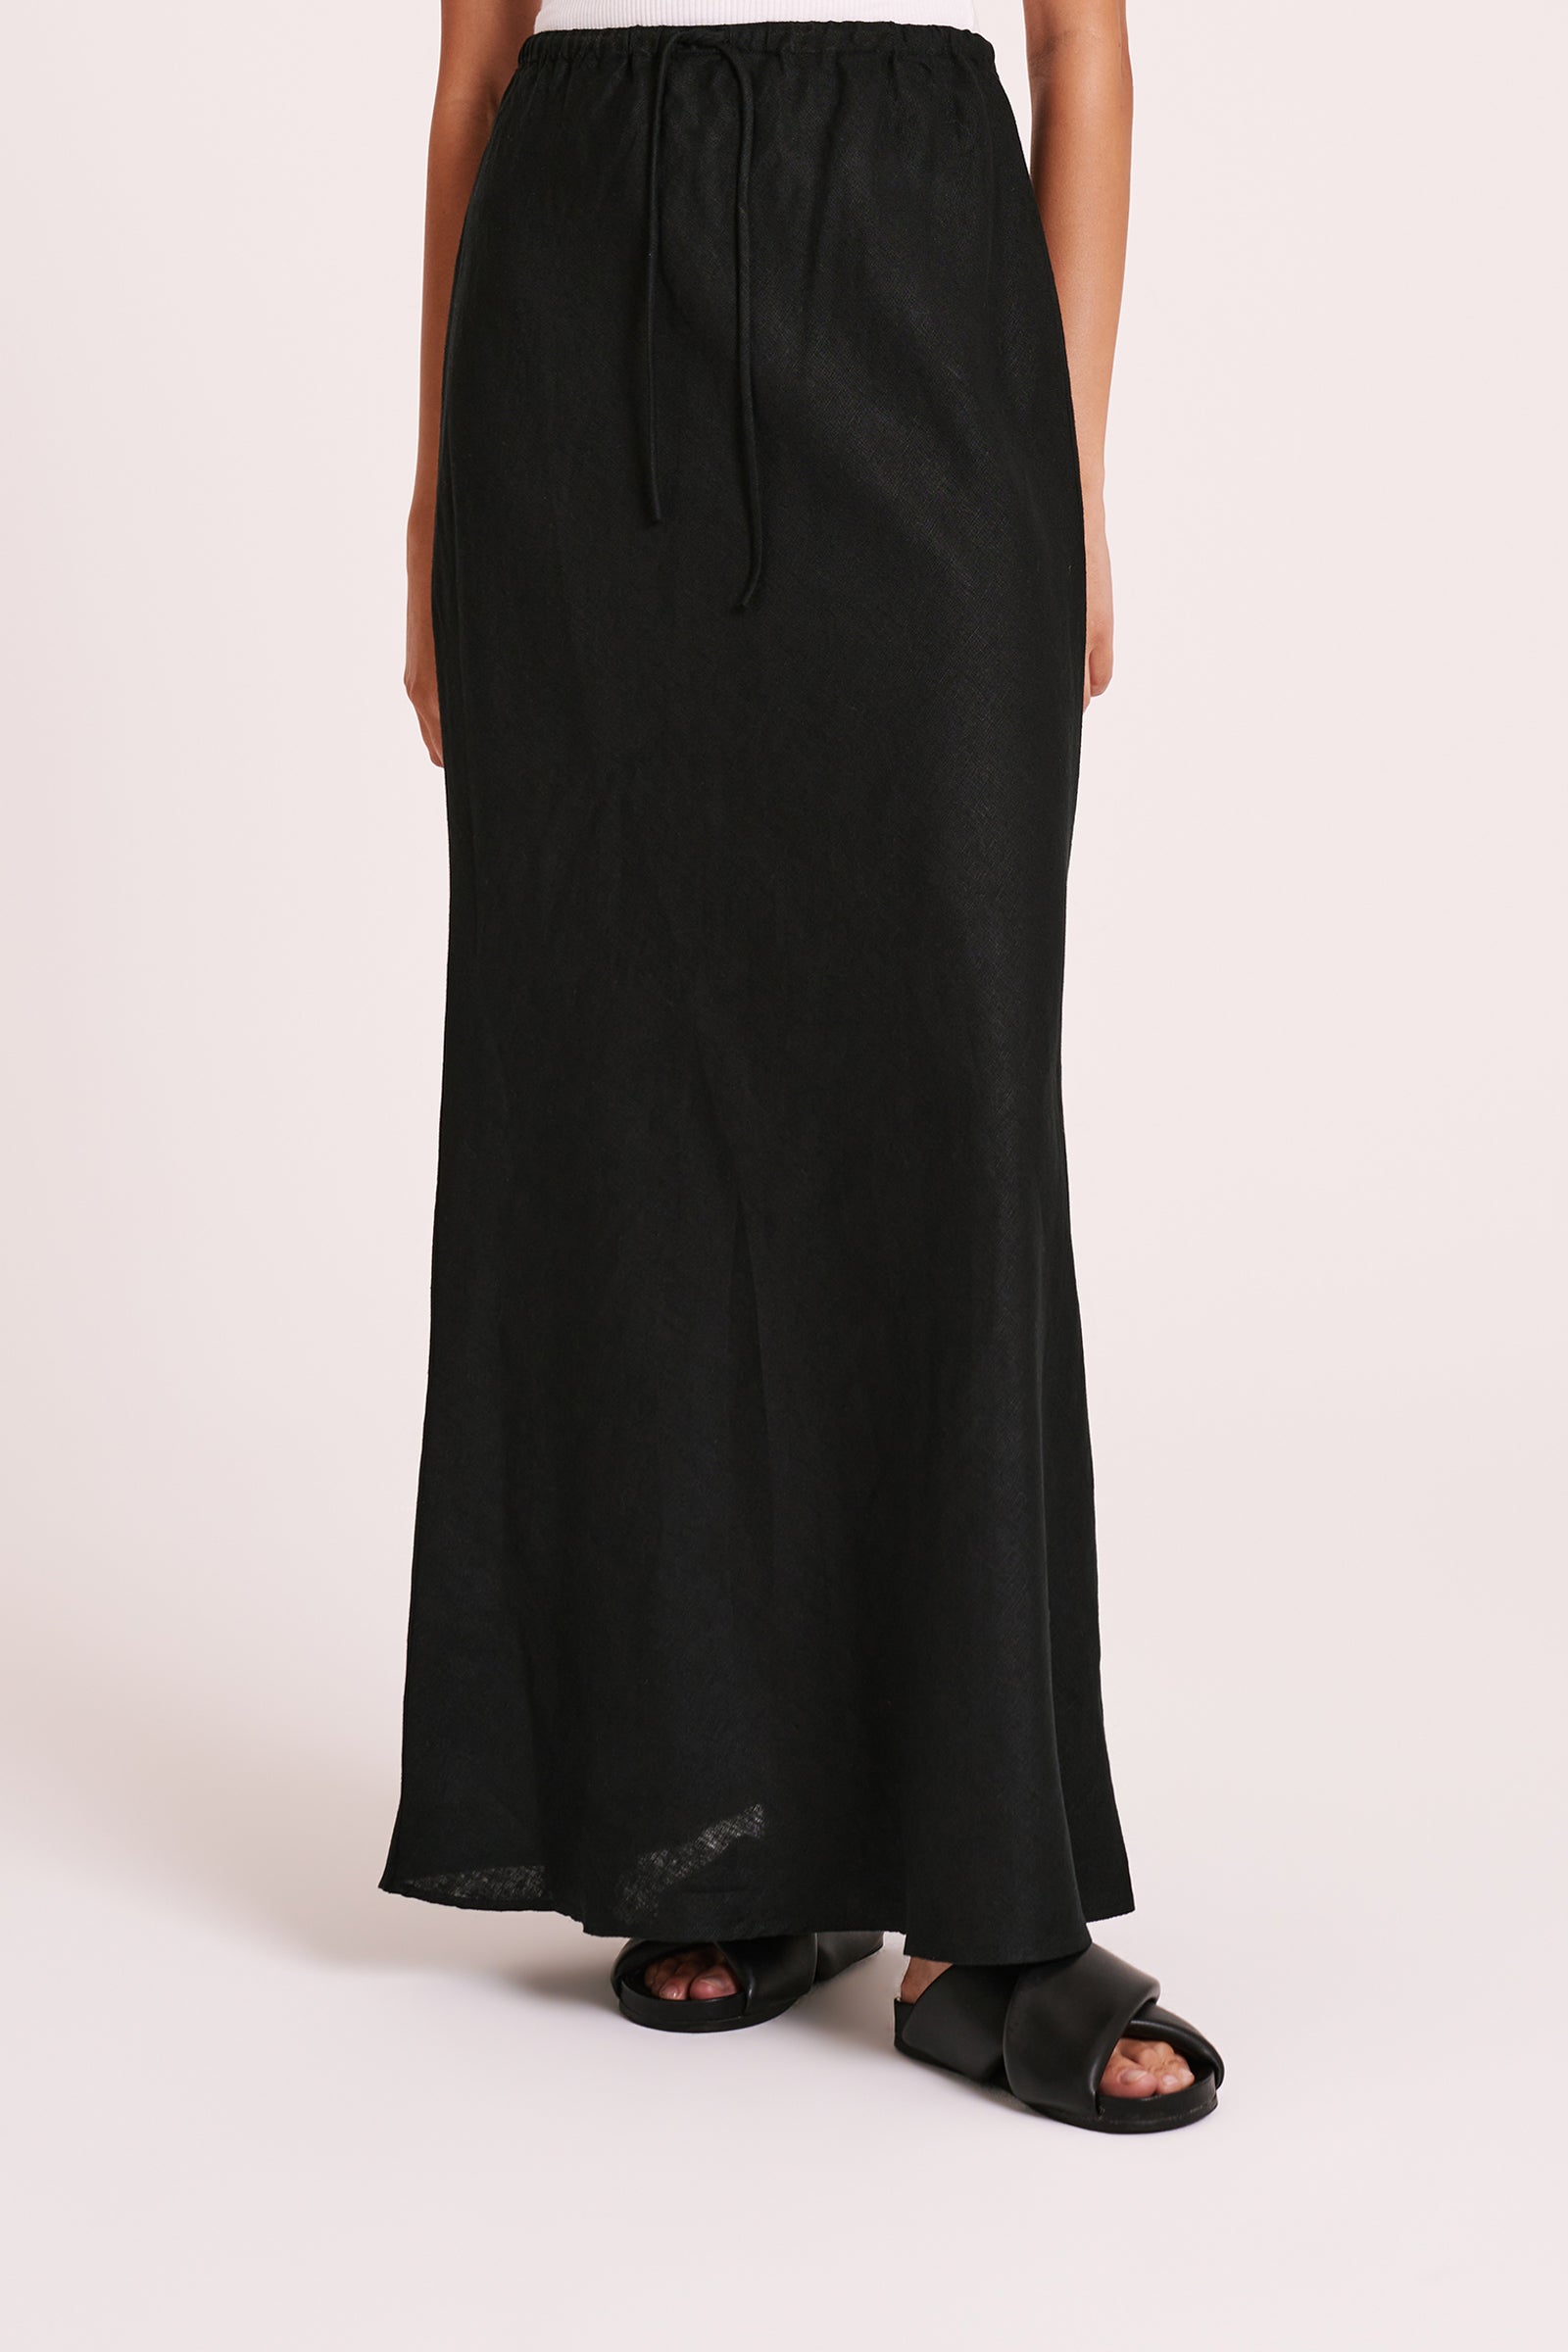 Amani Linen Skirt Black 